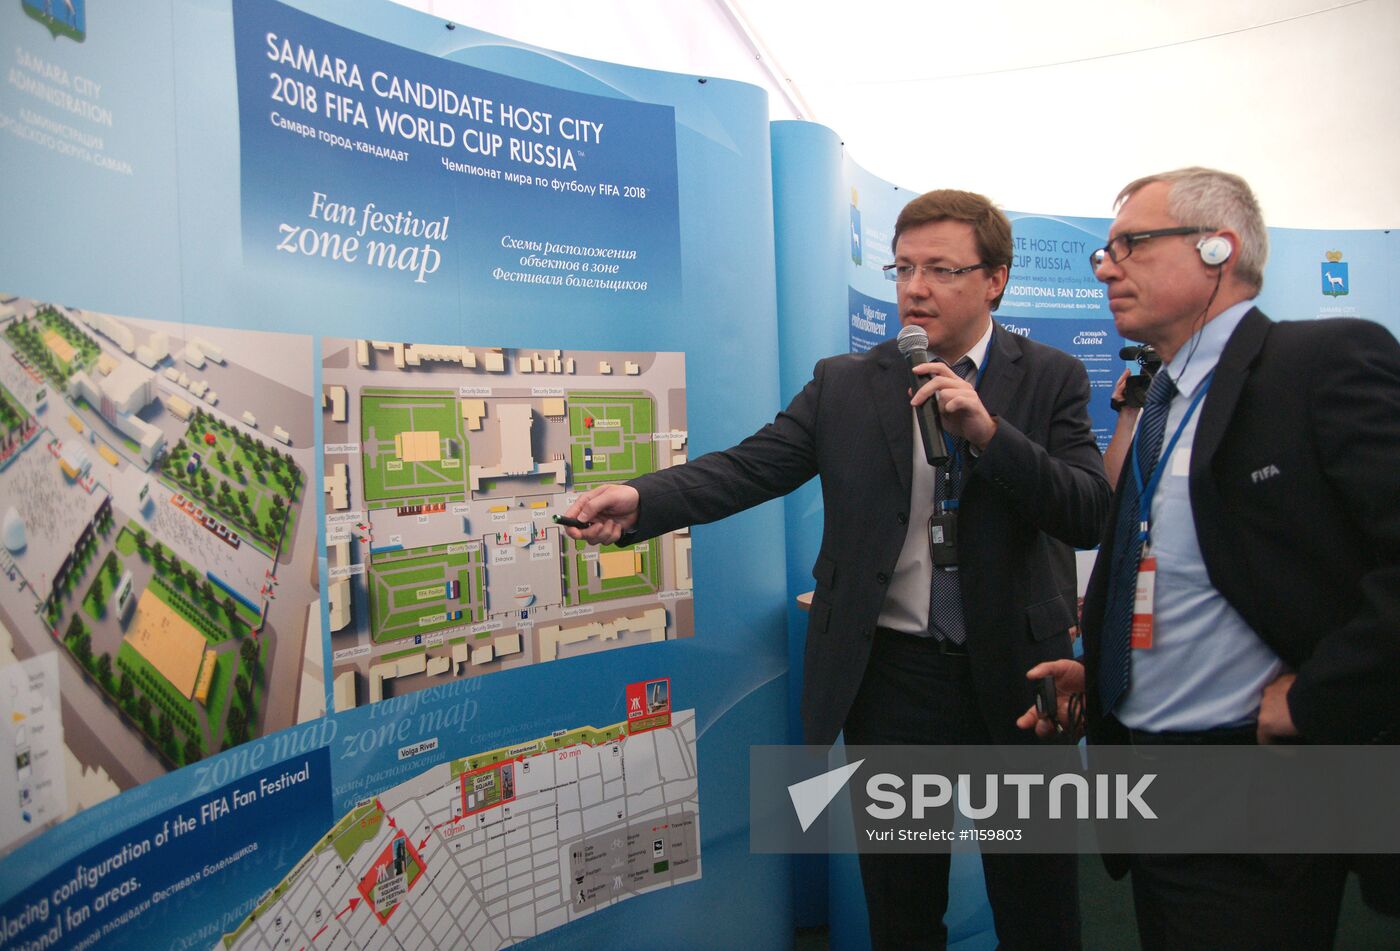 FIFA inspection team visit Samara